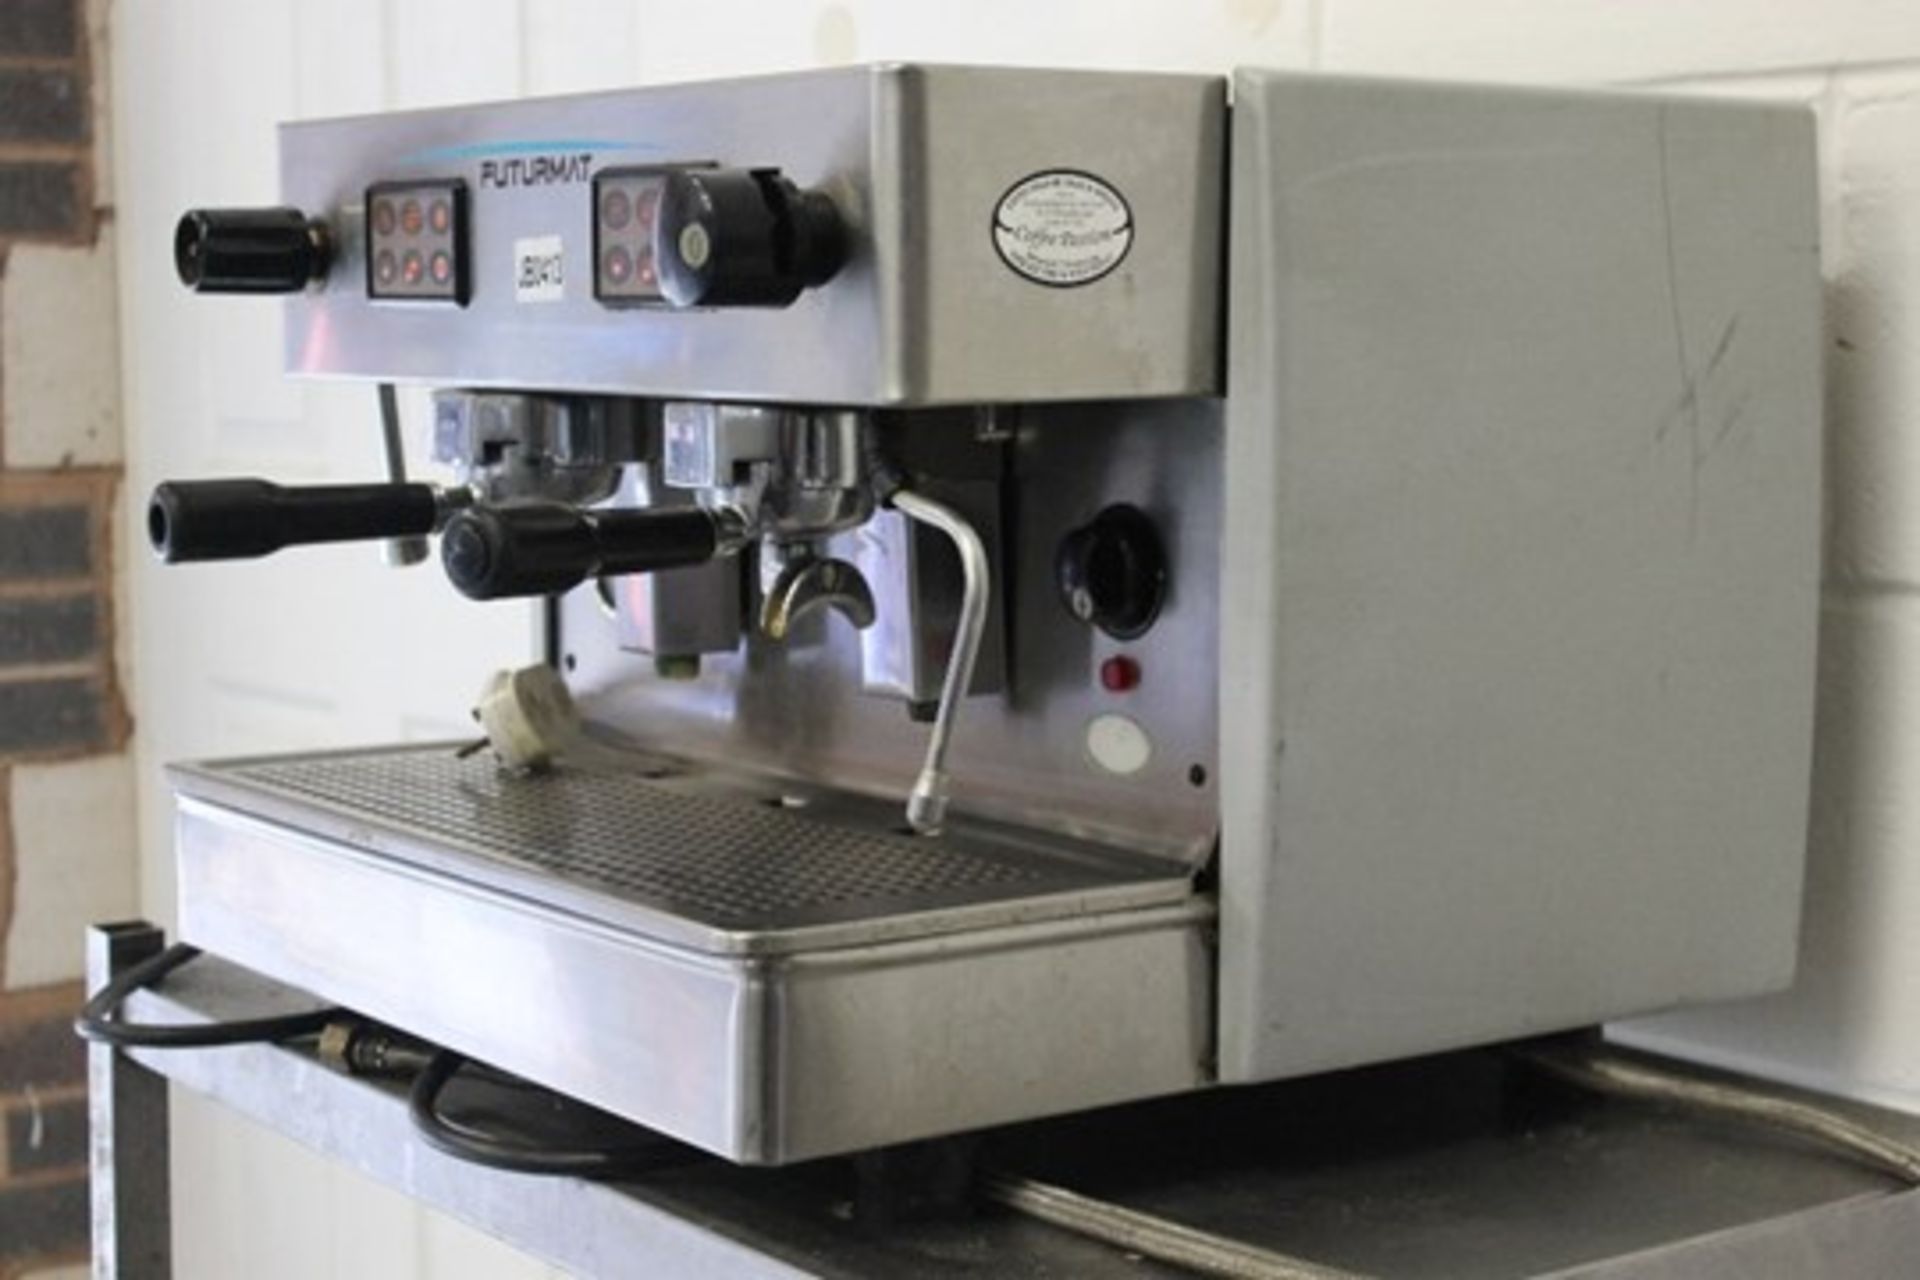 FUTURMAT  2 Group Espresso / Cappuccino Coffee Machine -1ph - Image 2 of 3